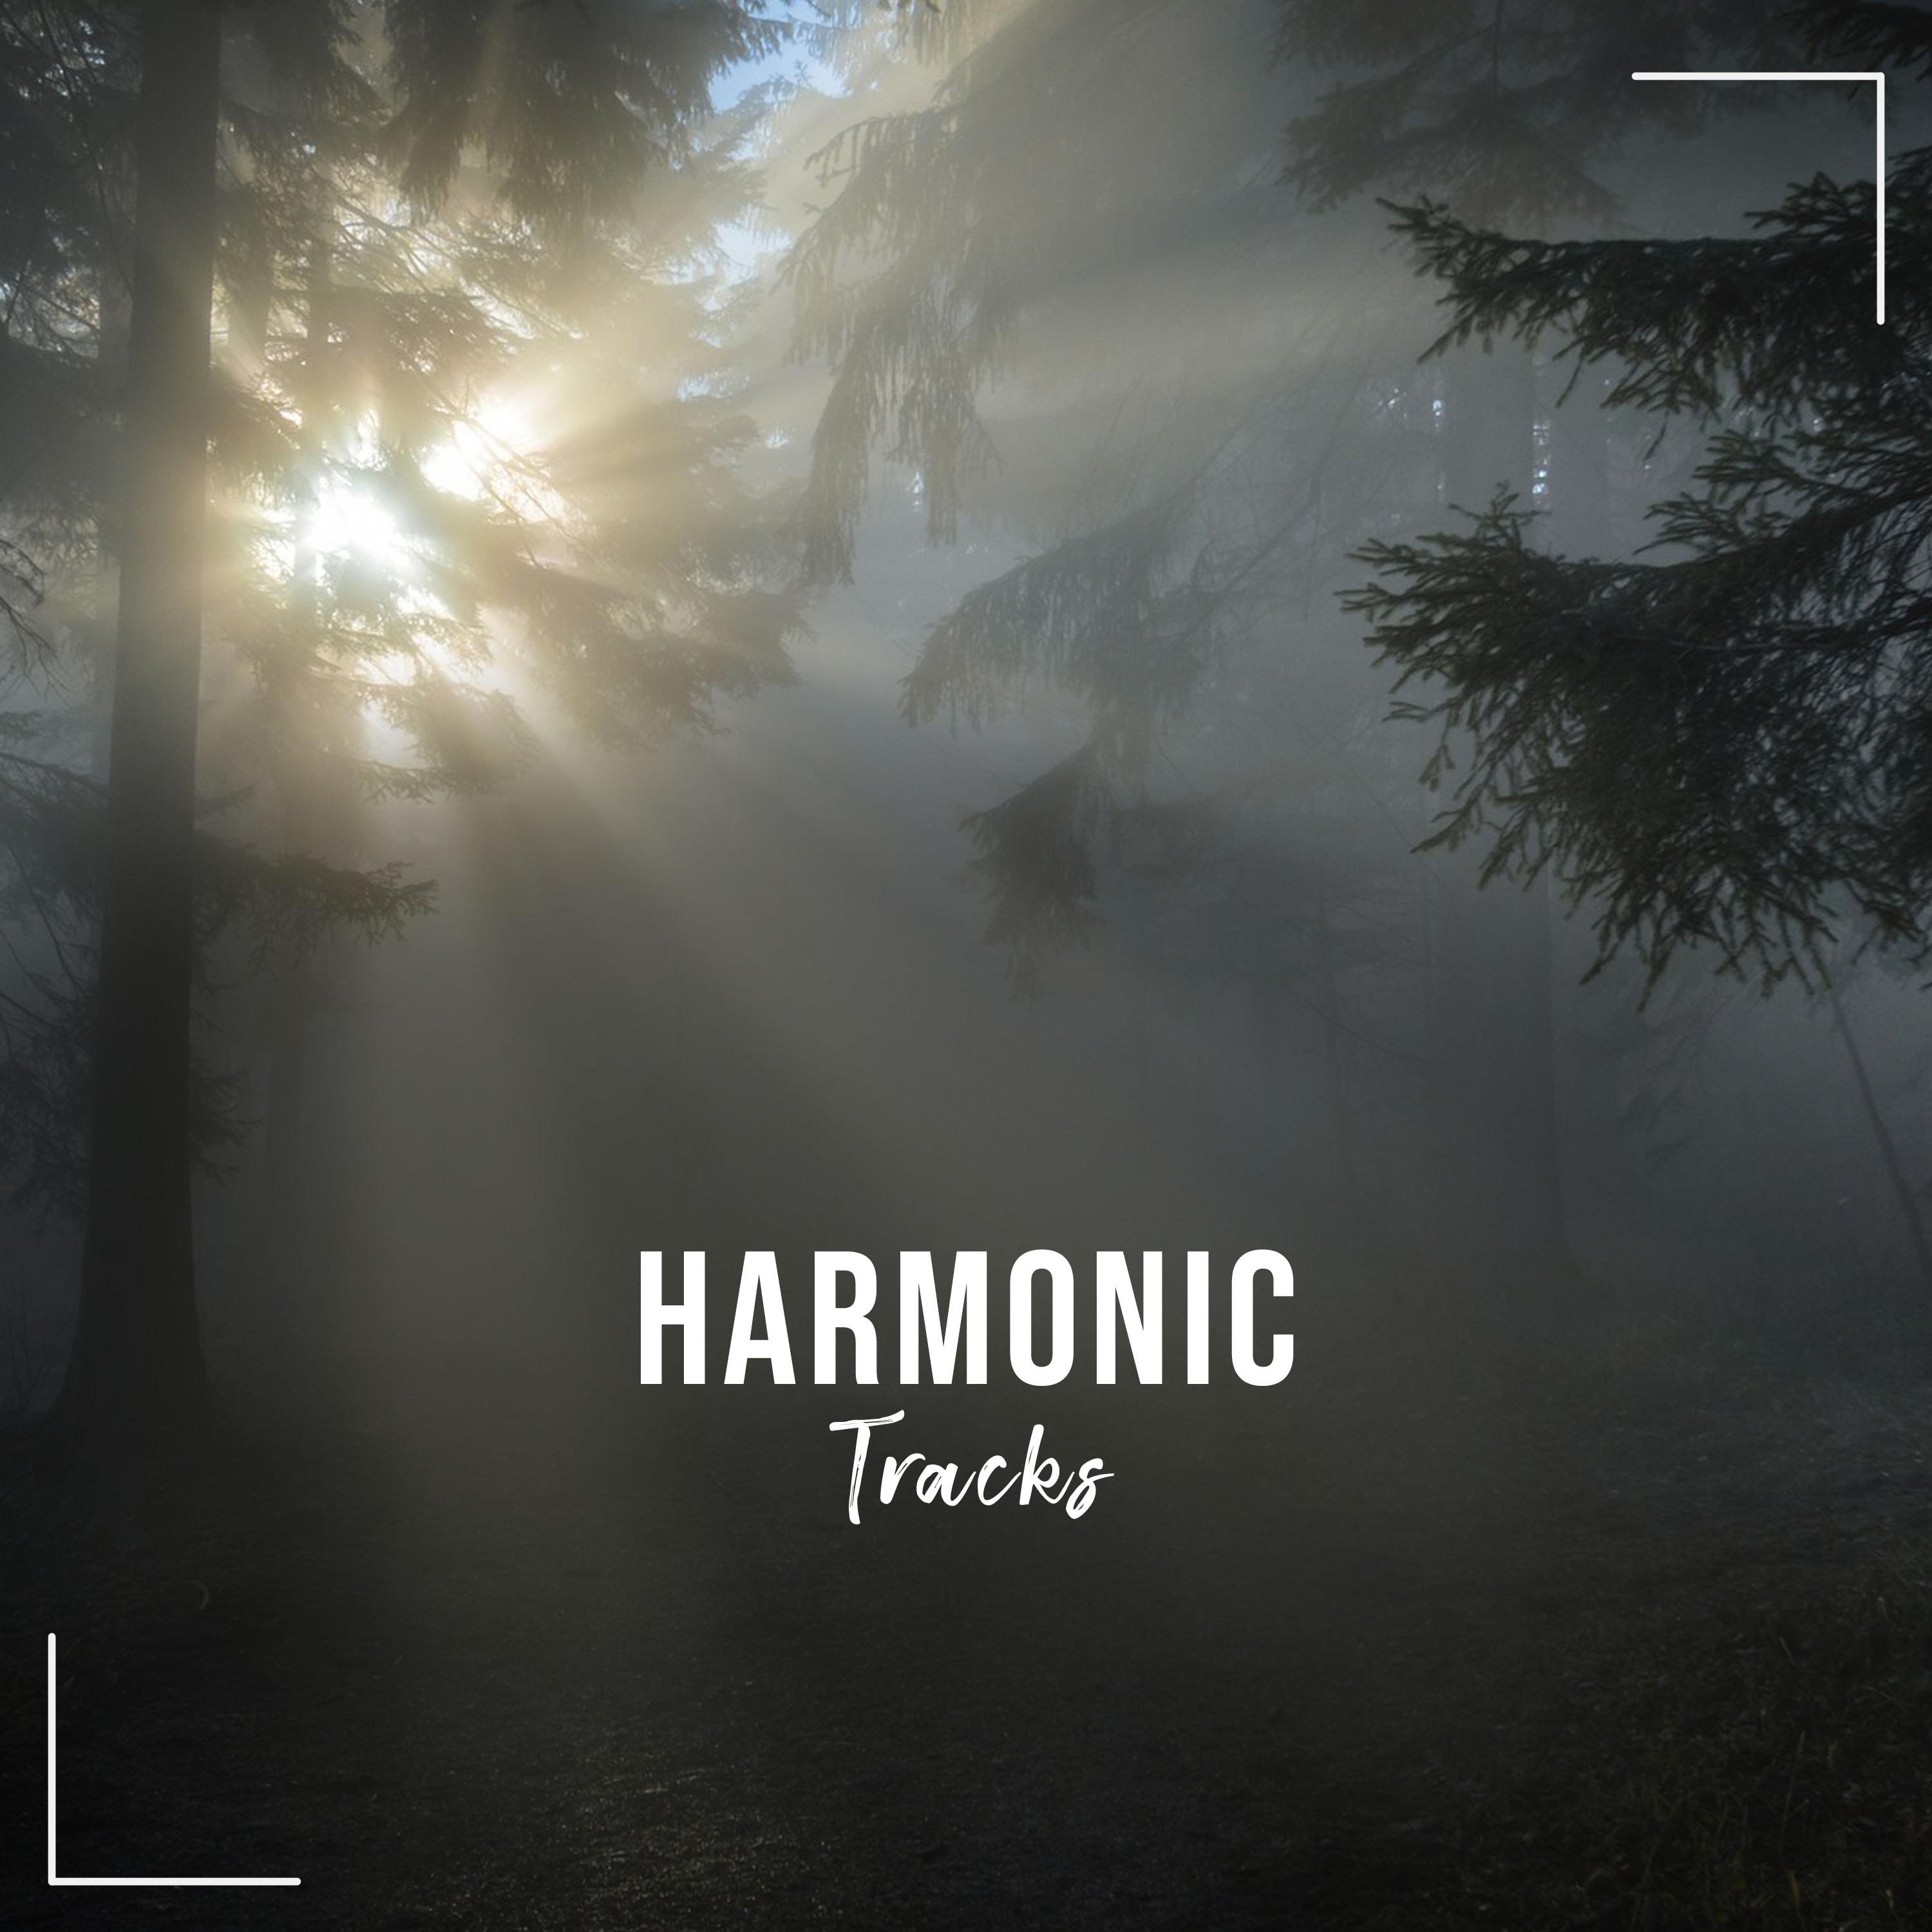 16 Harmonische Tracks, um den Geist zu bewahren